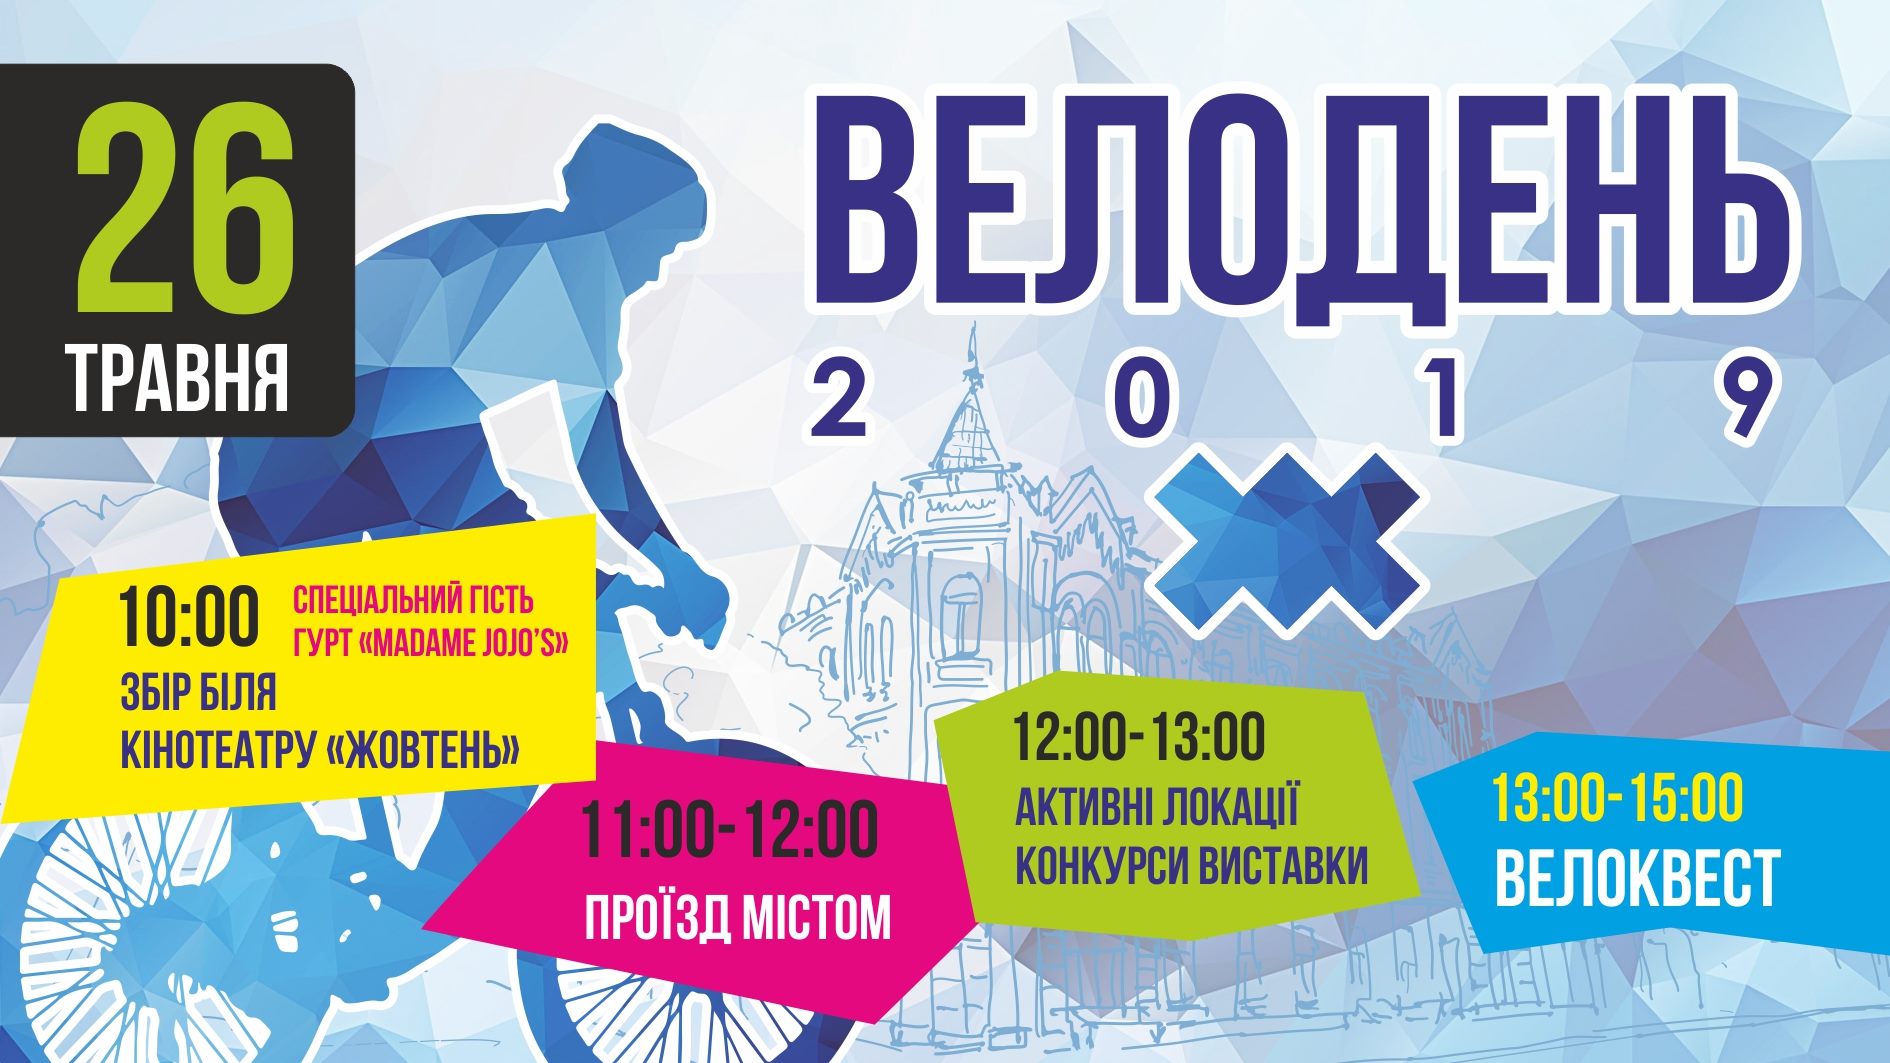 Запрошуємо долучитися до найбільшої вело-події року «Велодень – 2019»